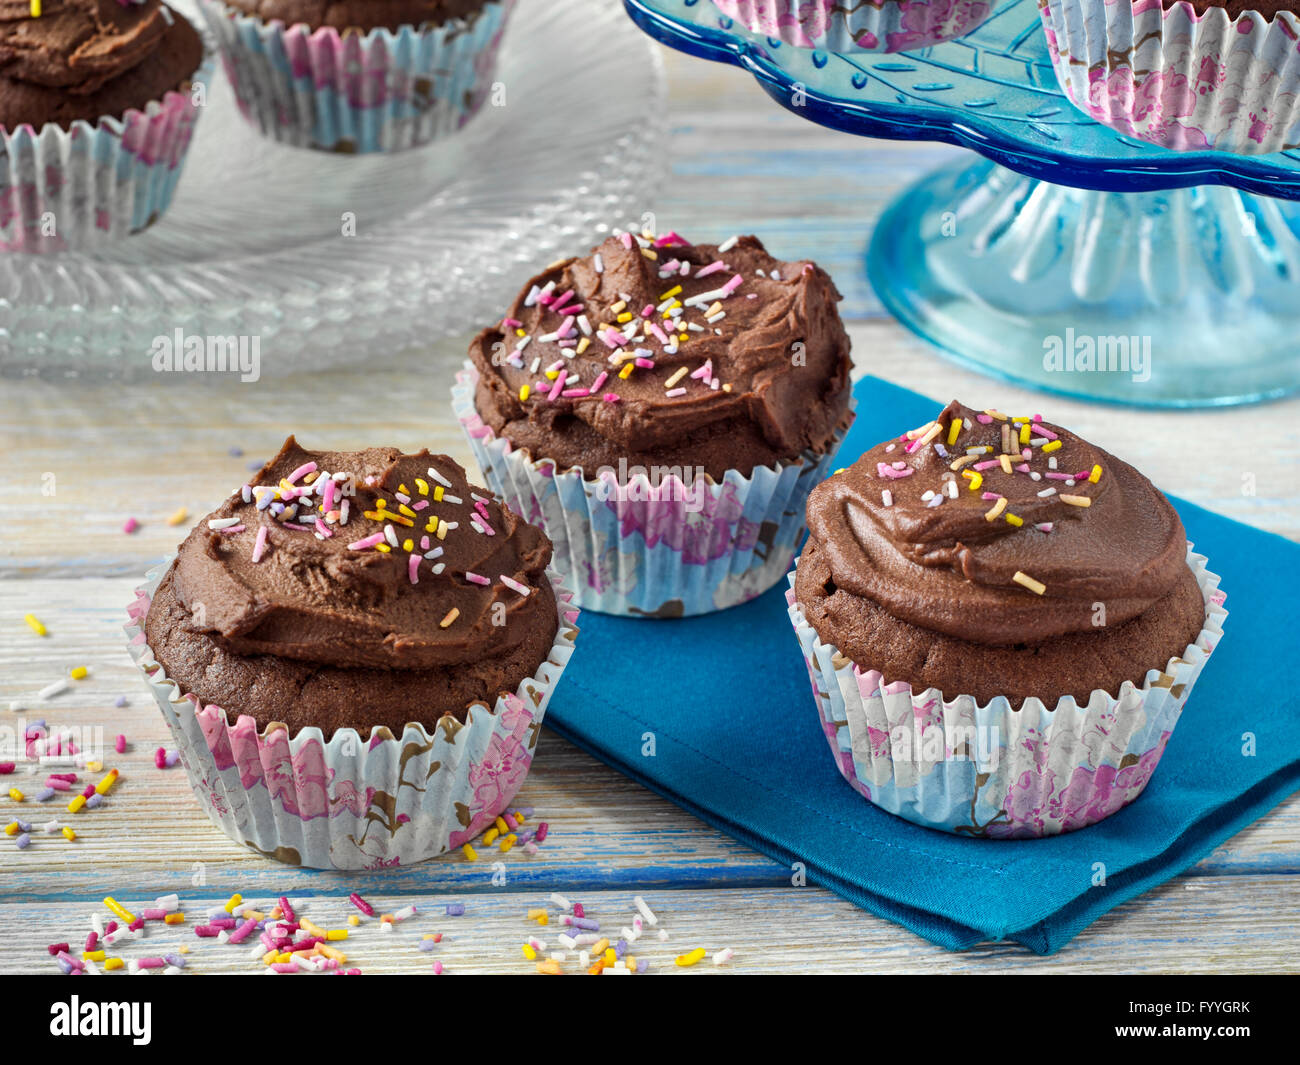 Vegan chocolate cupcakes Stock Photo